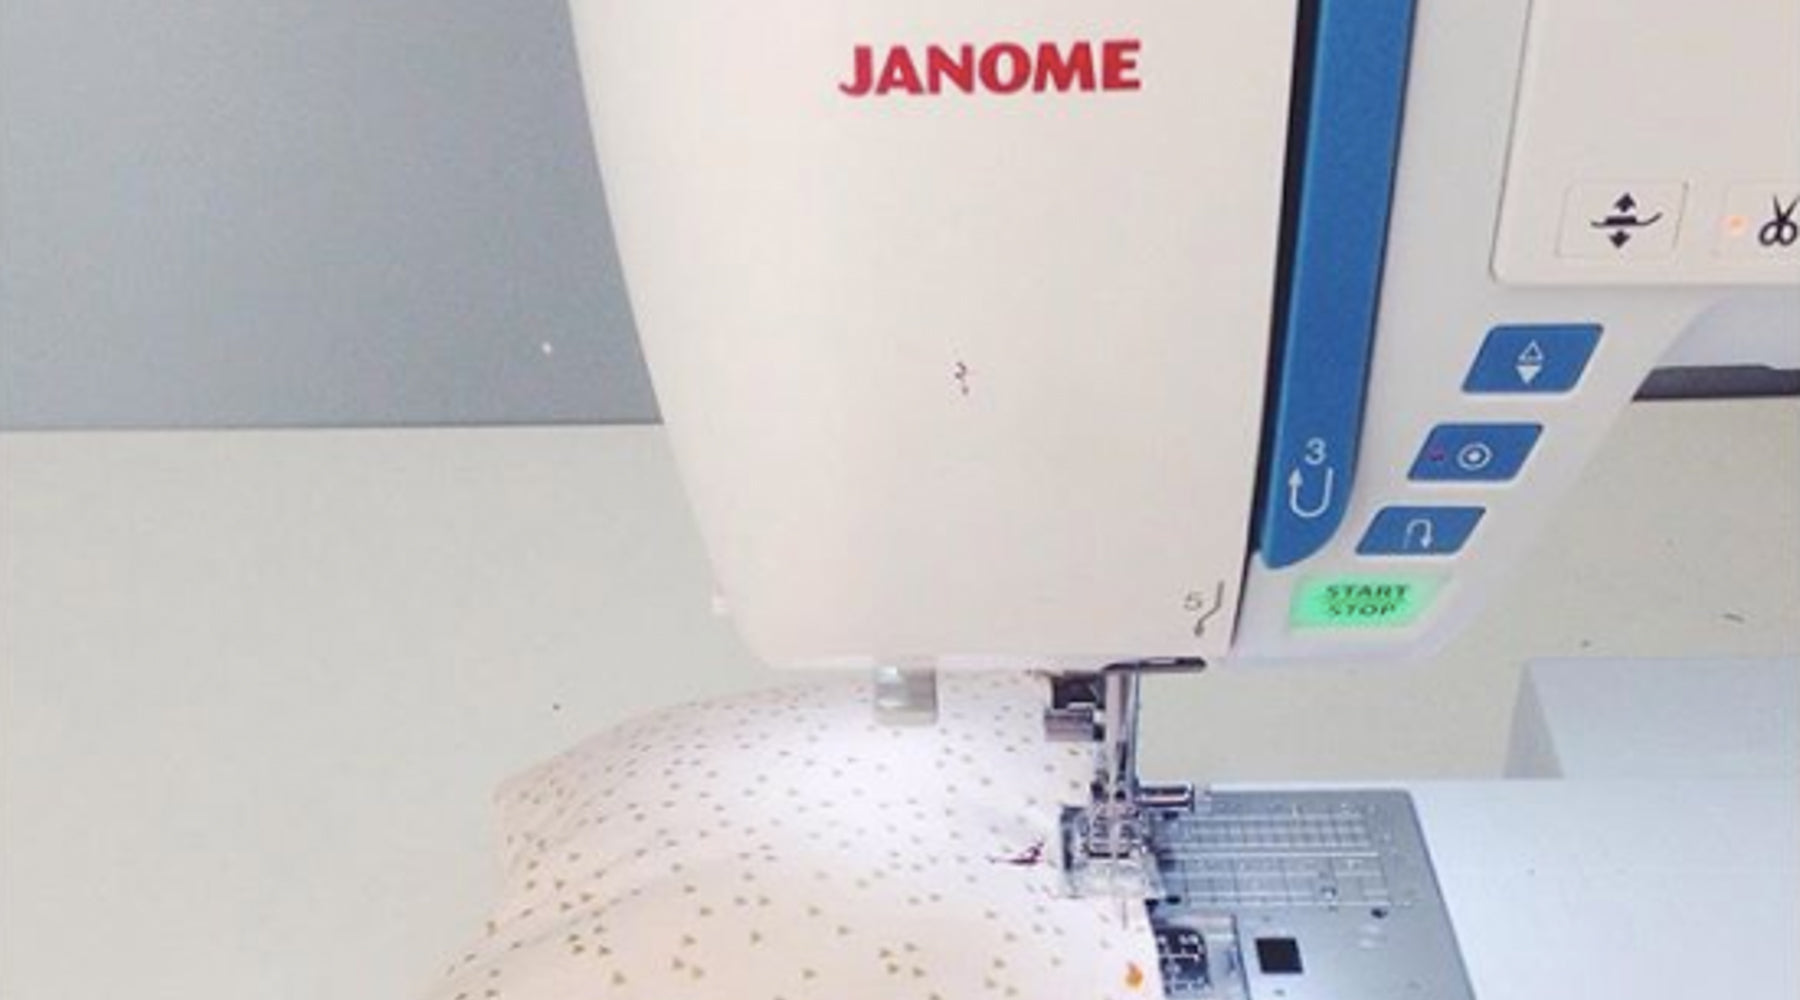 acheter machine à coudre débutante couture charlotte auzou janome